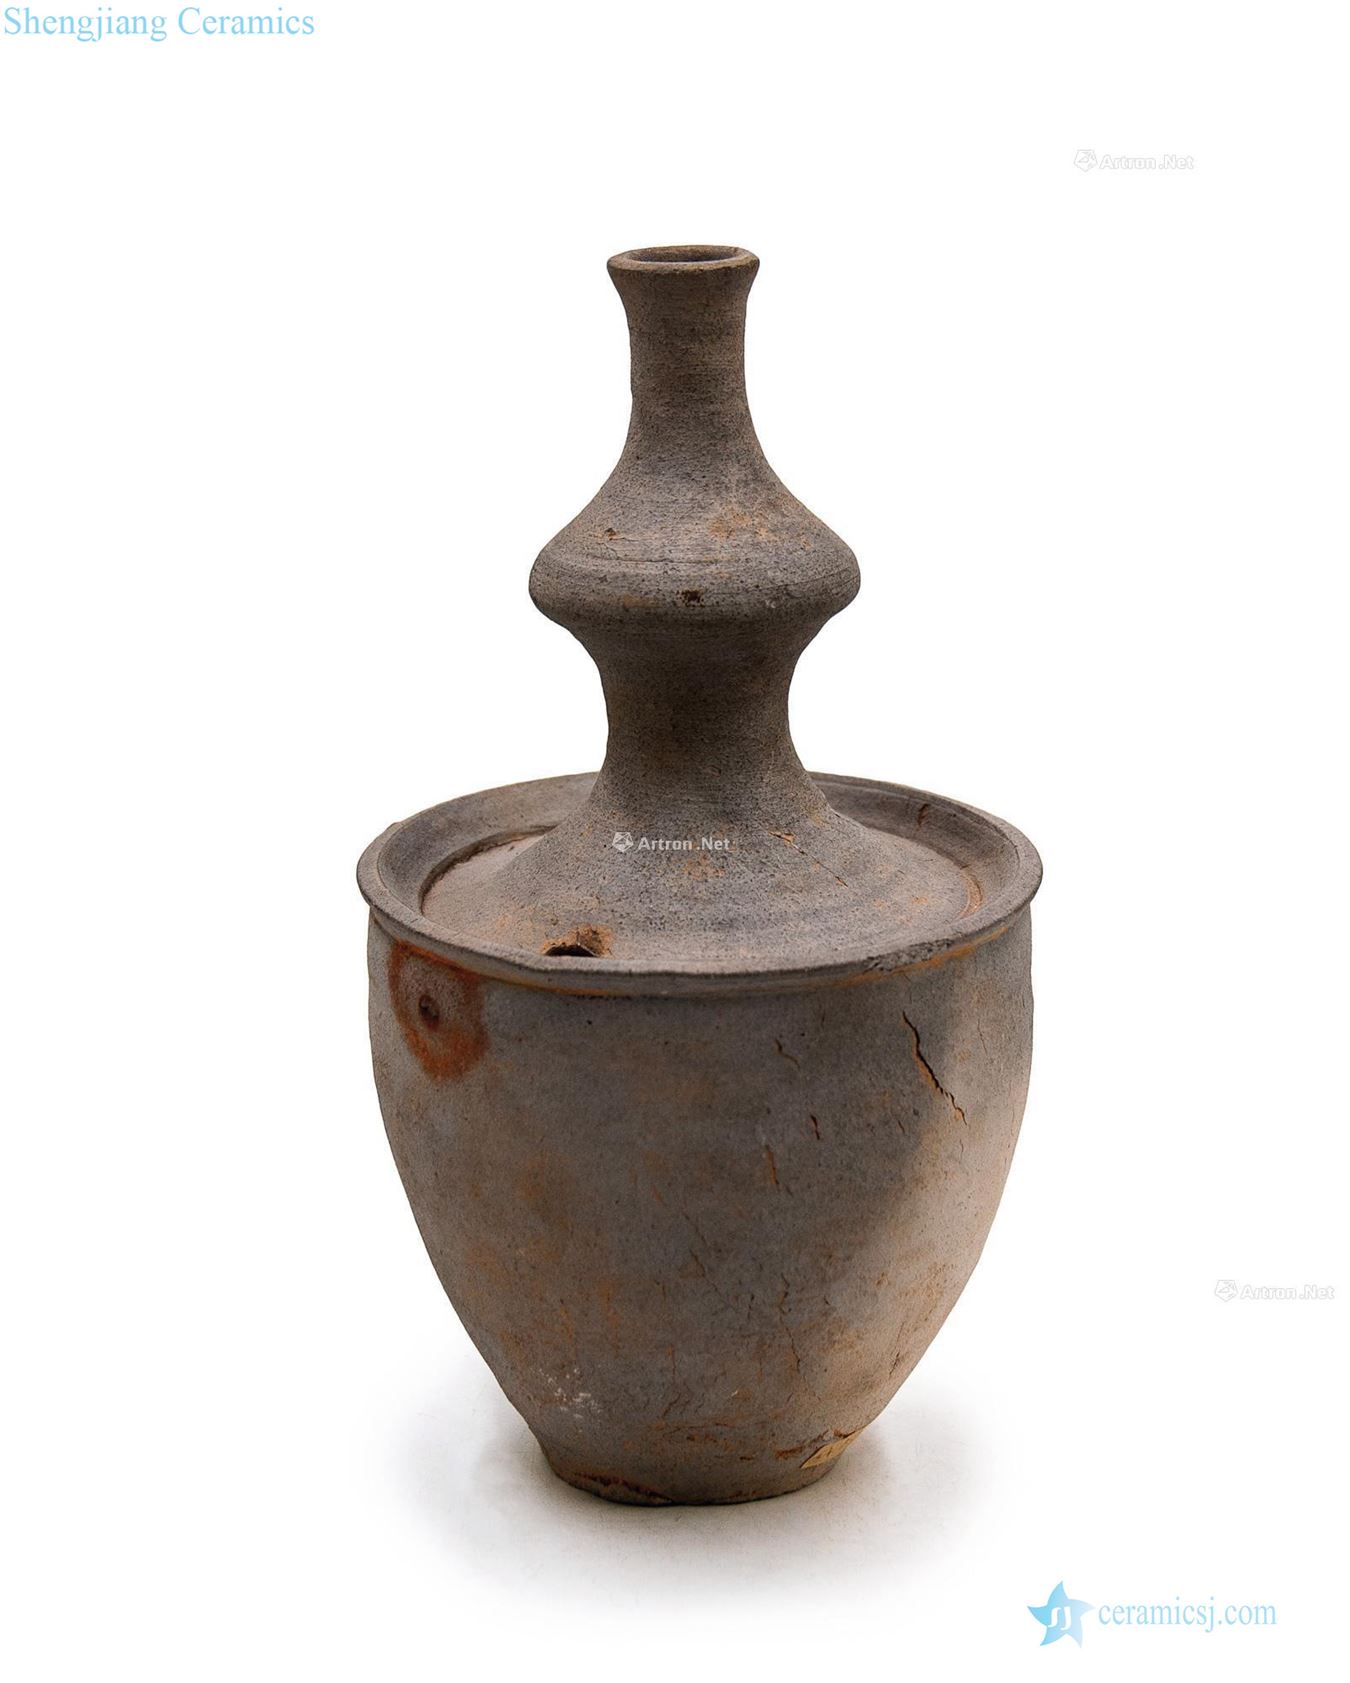 Koryo period (918-1392), ceramic net bottles